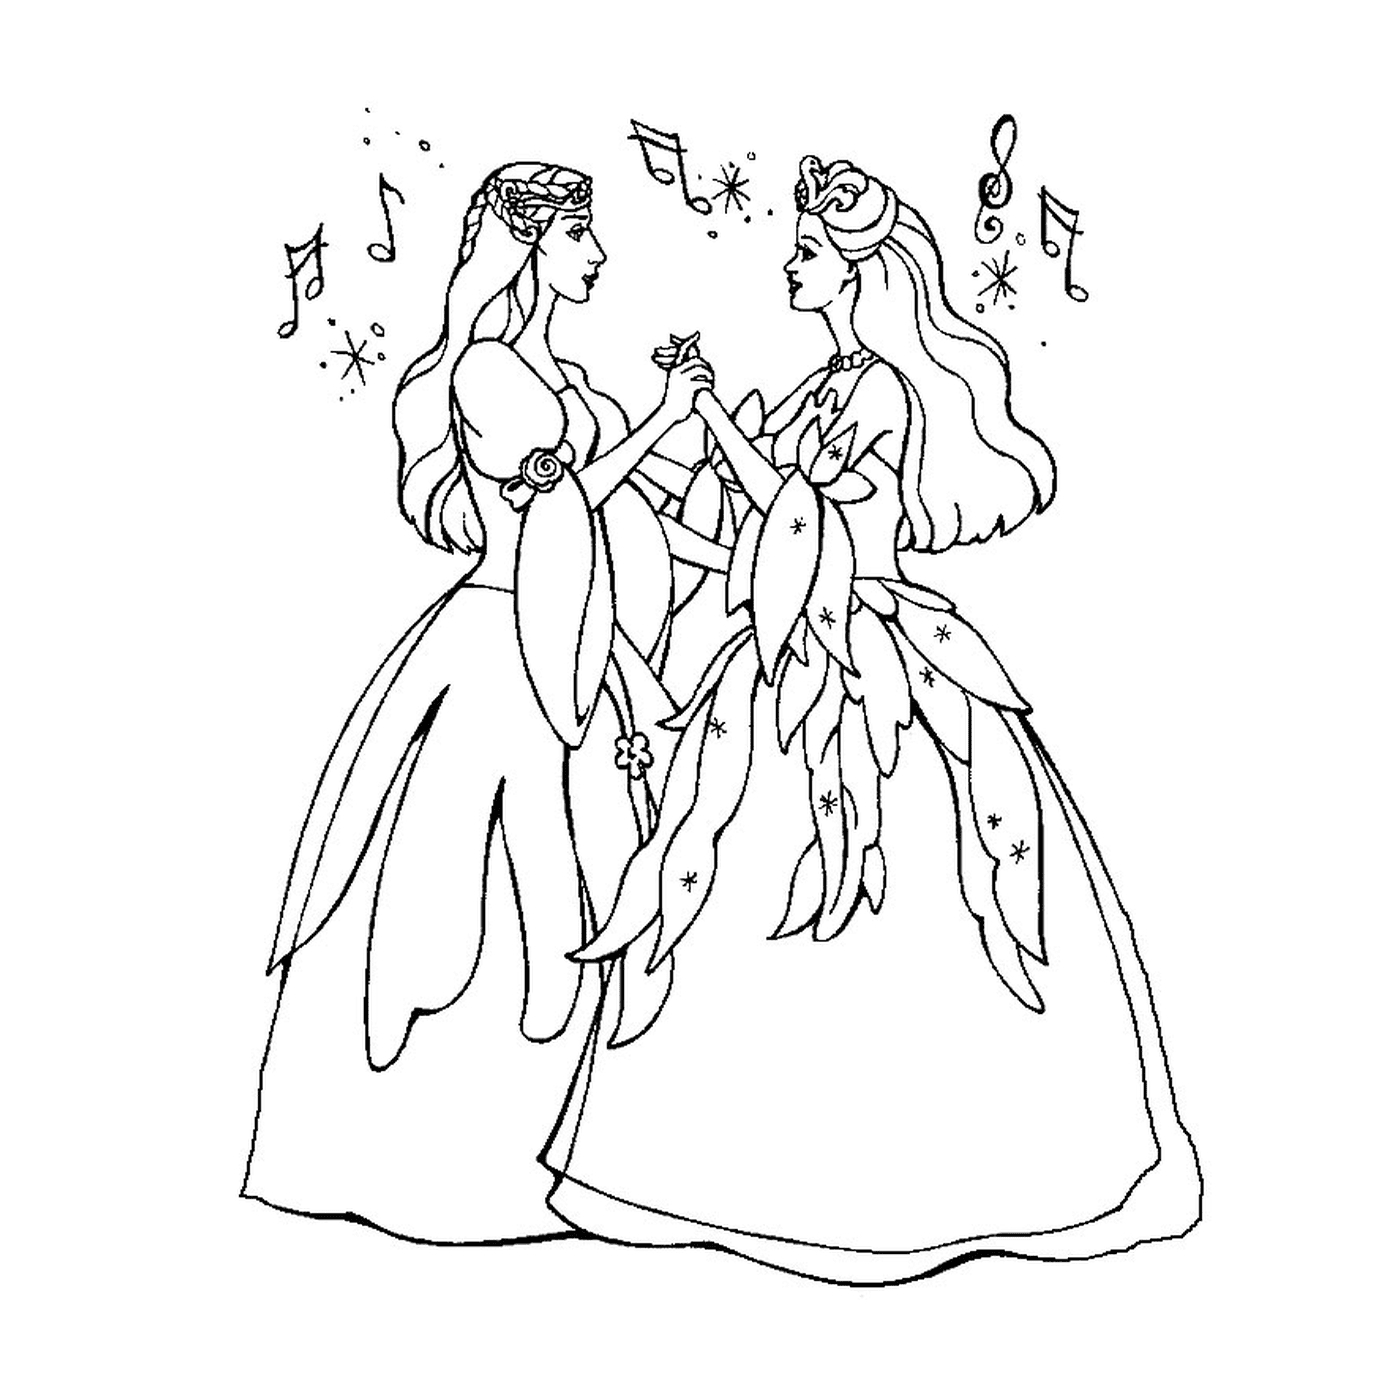  Dos mujeres vestidas de hadas 